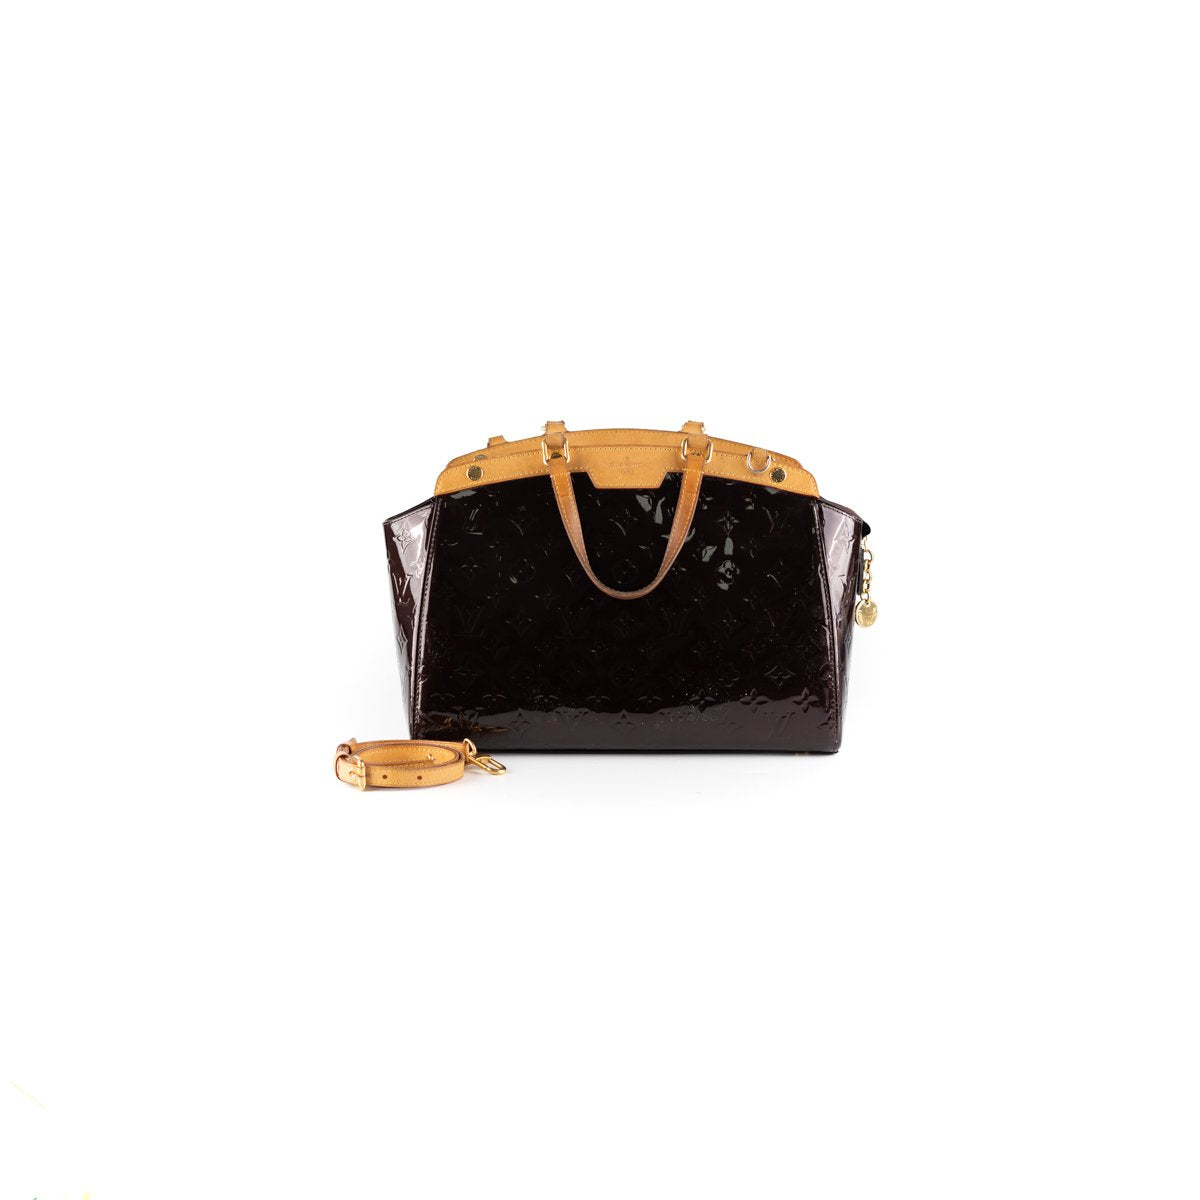 Louis Vuitton Brea Patent Leather Bag Burgundy - THE PURSE AFFAIR